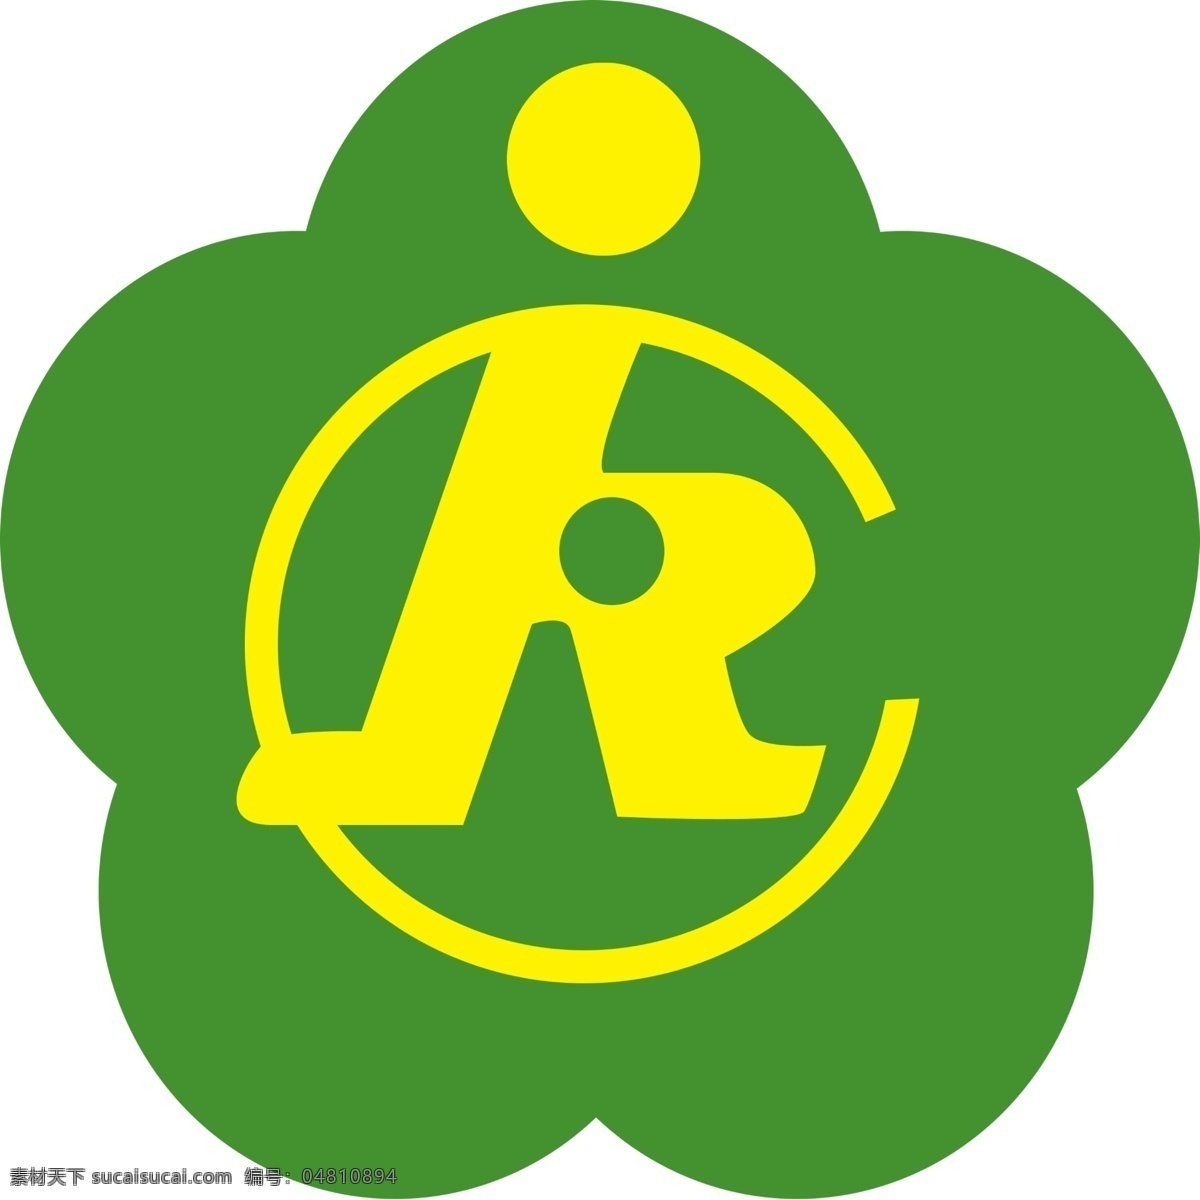 残联 中国残联 logo 中国残疾人 联合会 标志图标 公共标识标志